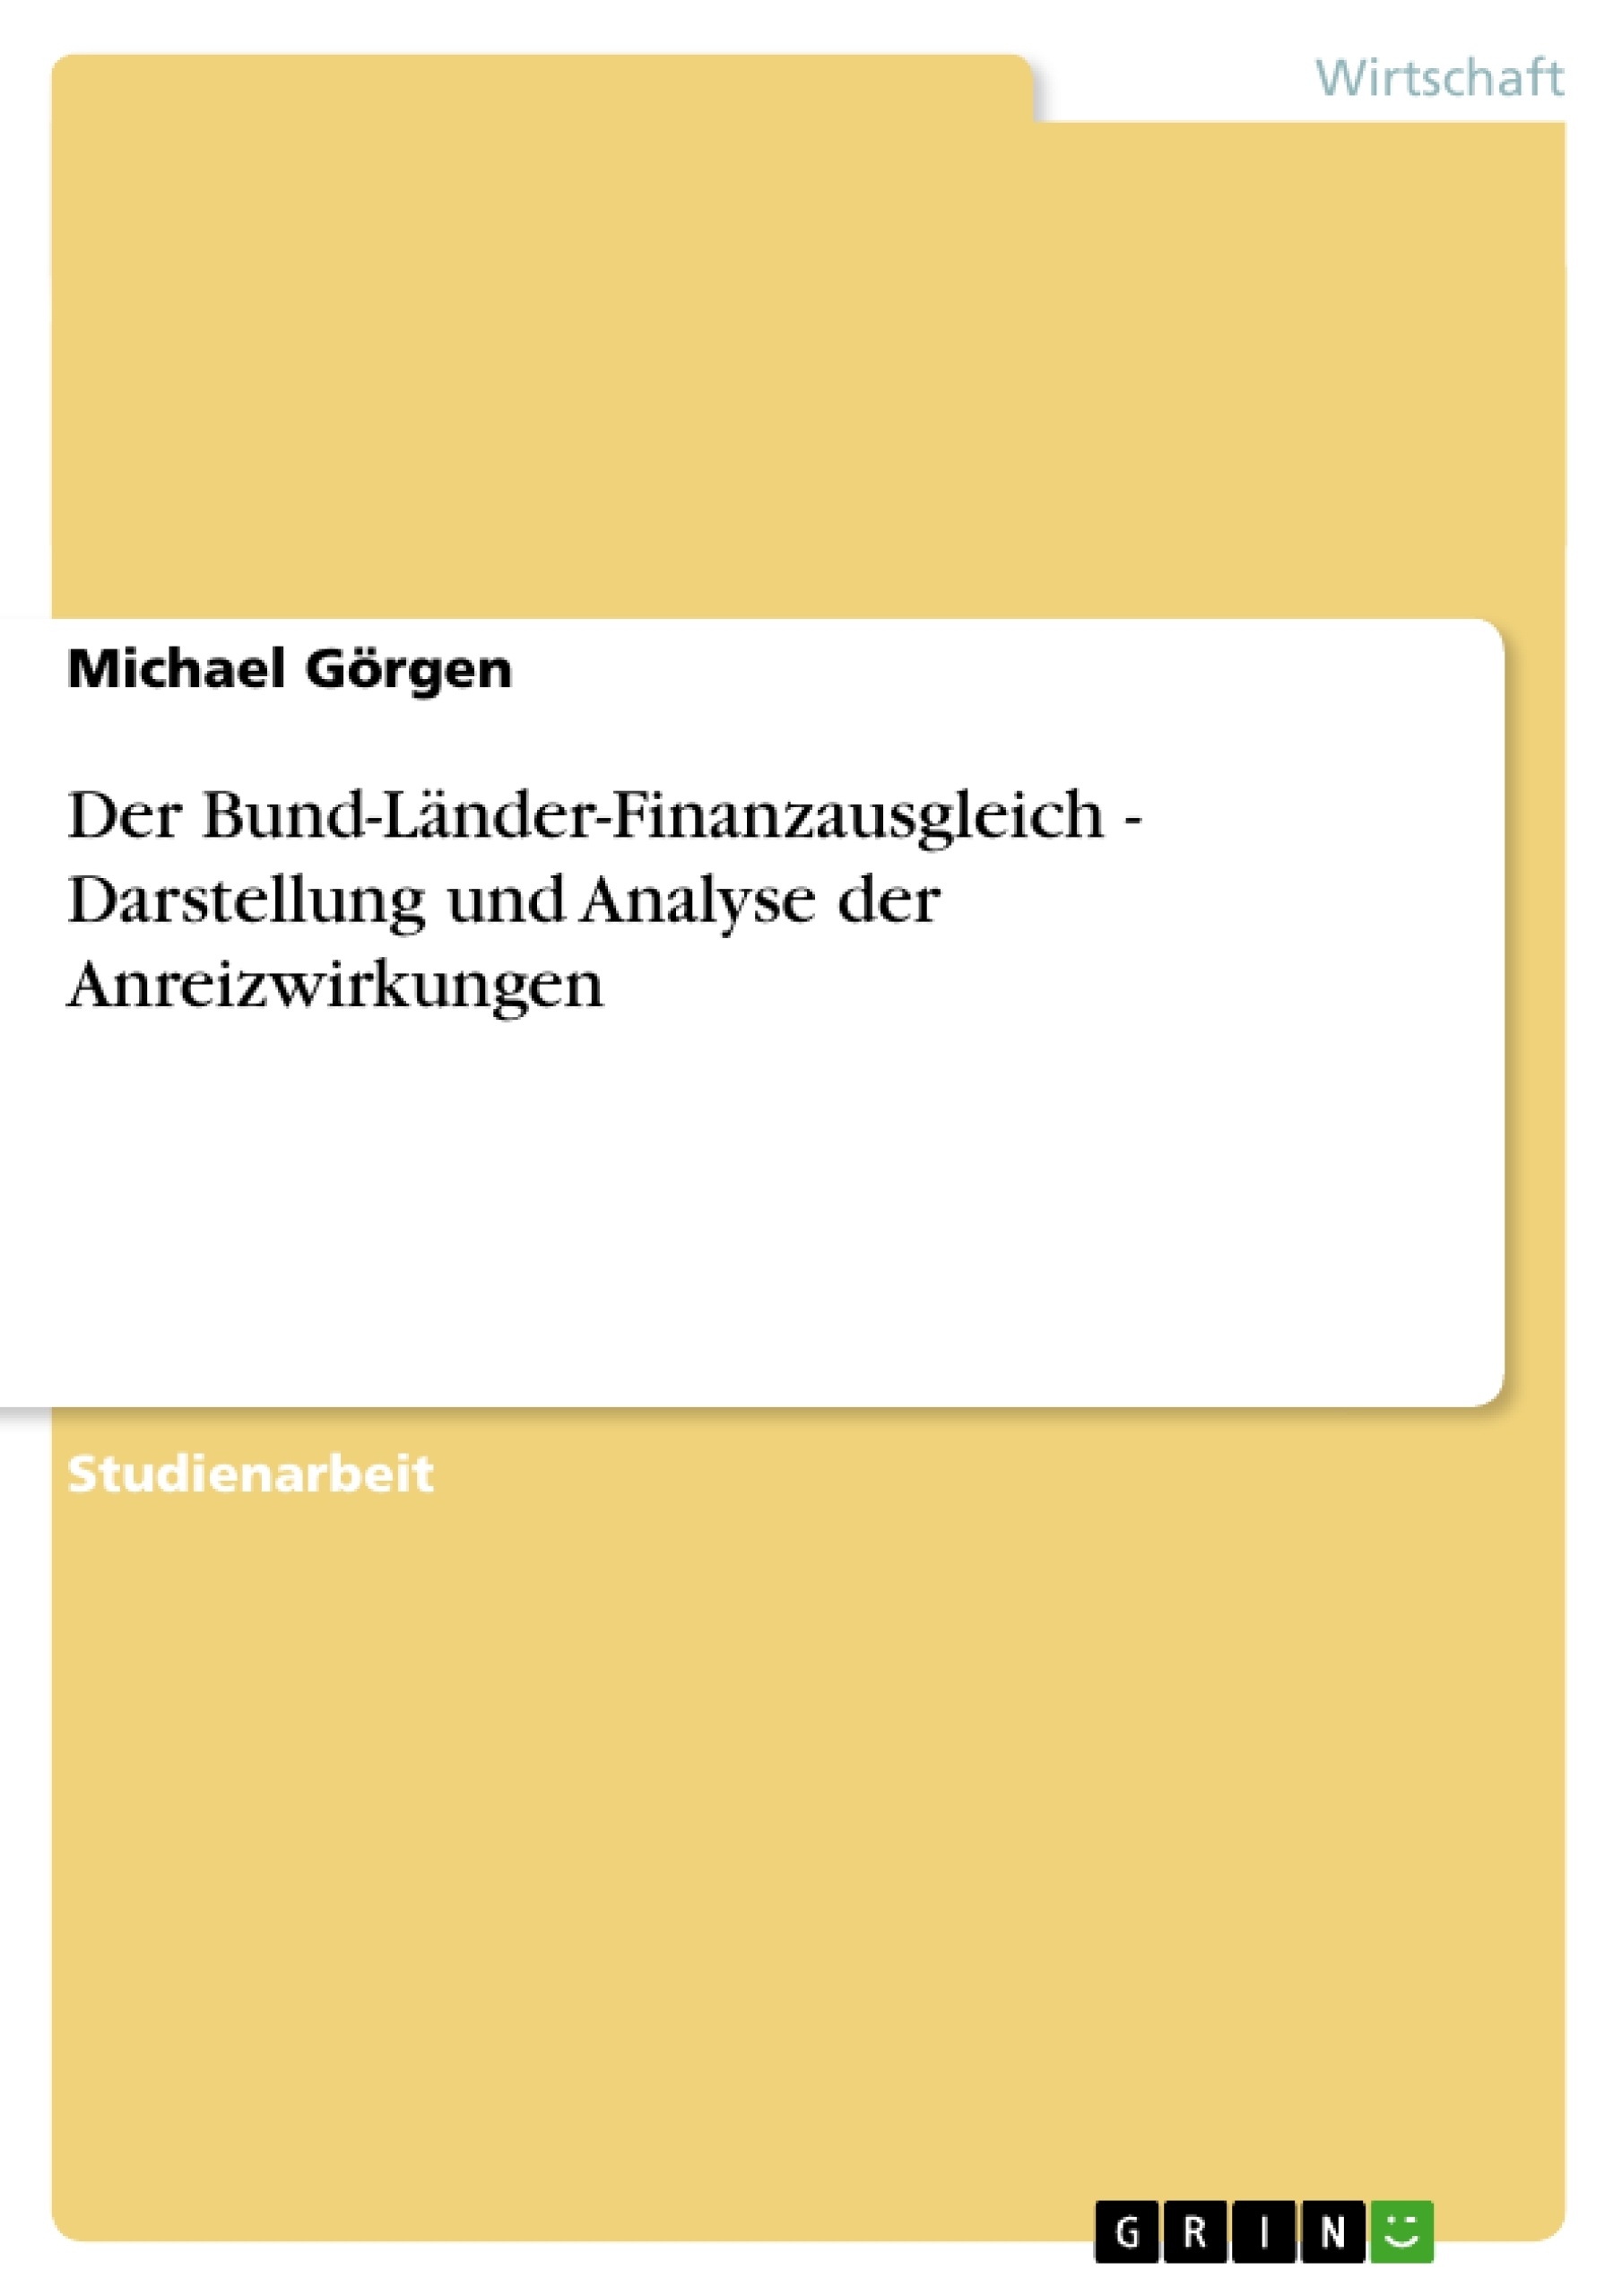 Title: Der Bund-Länder-Finanzausgleich - Darstellung und Analyse der Anreizwirkungen